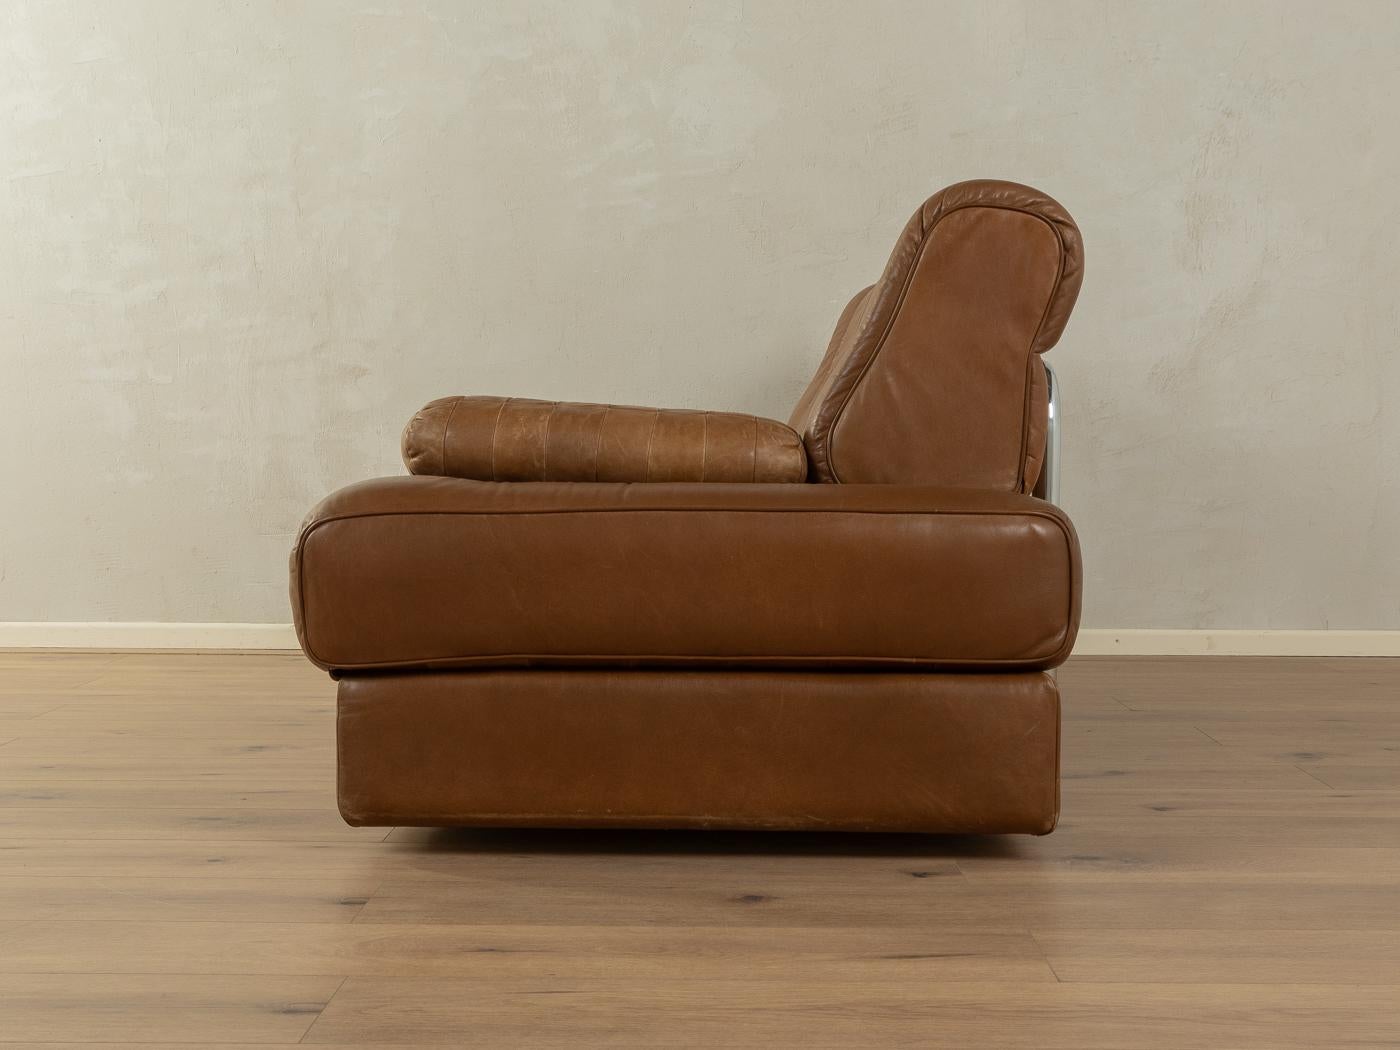  Convertible sofa, de Sede, DS-85  6